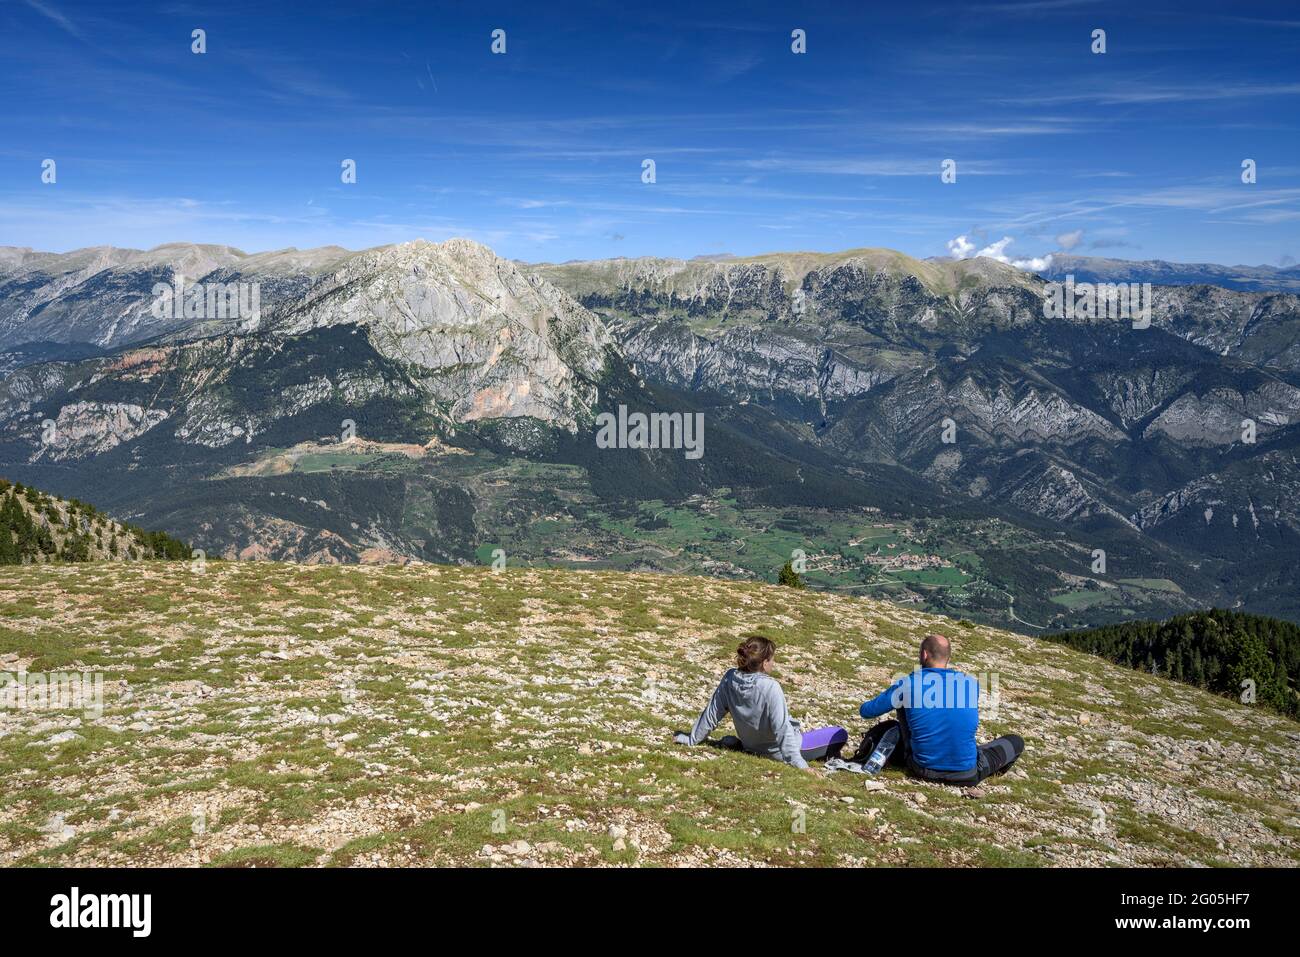 Excursionistas en la cumbre de la Gallina Pelada, el punto más alto de Serra d'Ensija, mirando hacia las caras sur de Pedraforca y Cadí (Berguedà, Cataluña) Foto de stock